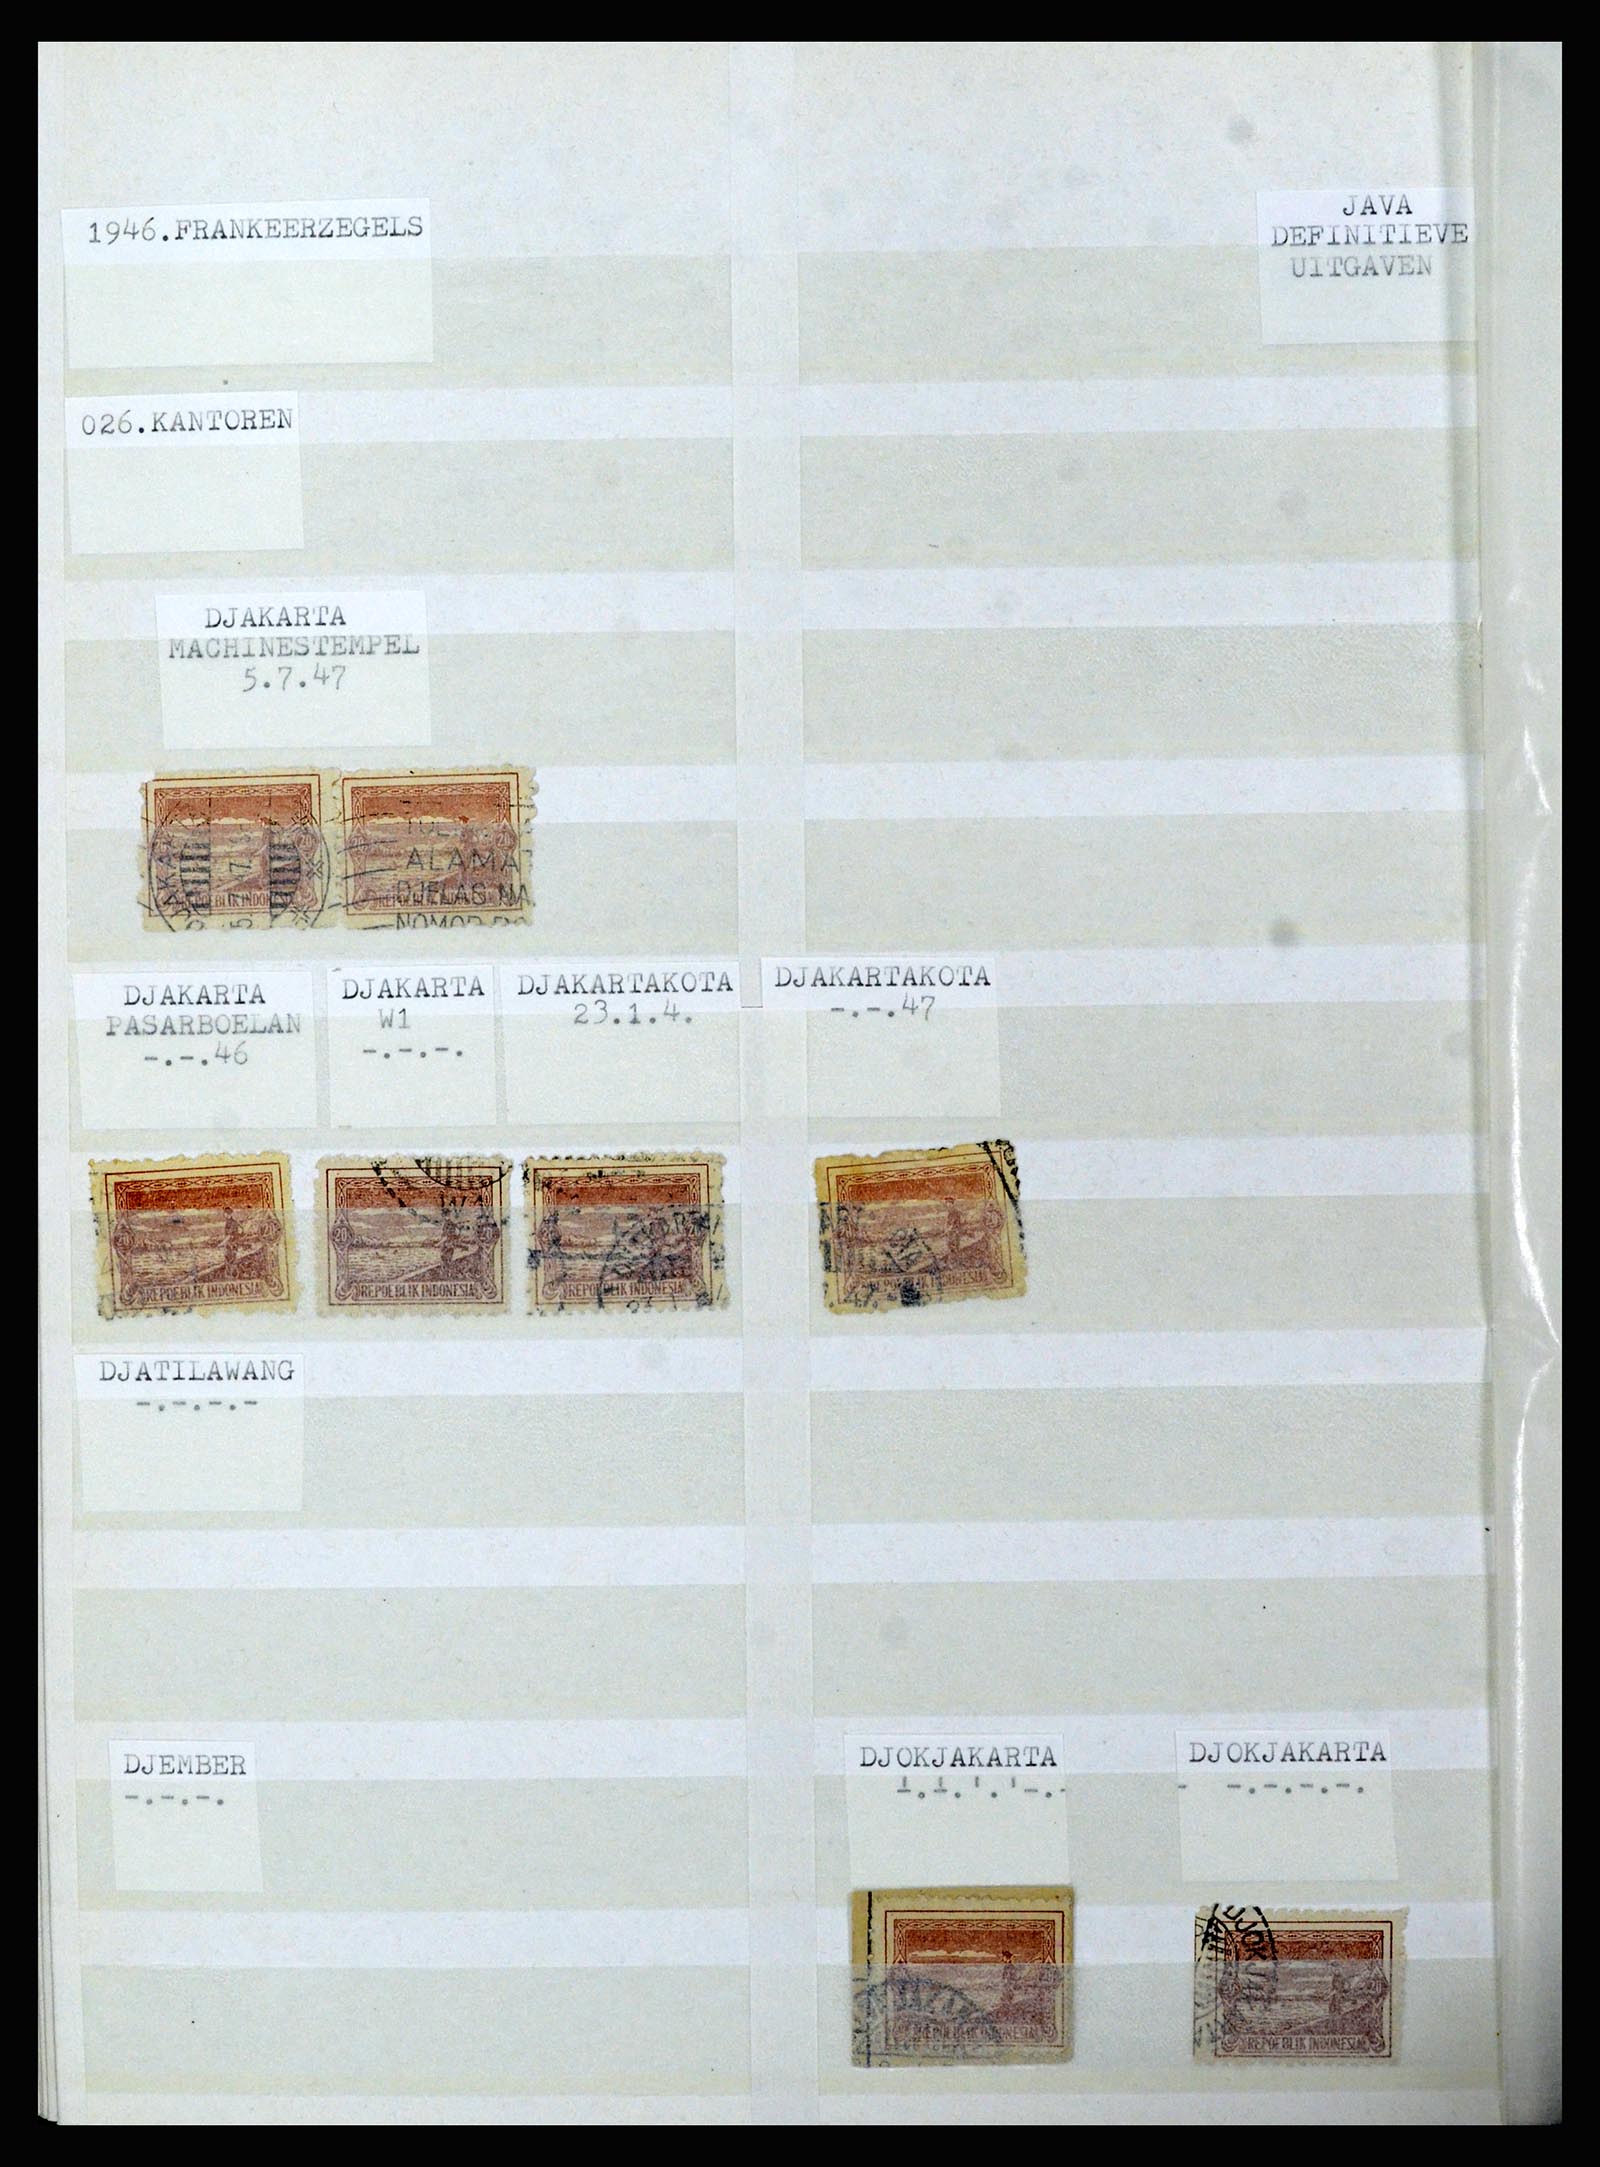 36742 100 - Stamp collection 36742 Dutch Indies interim period 1945-1949.